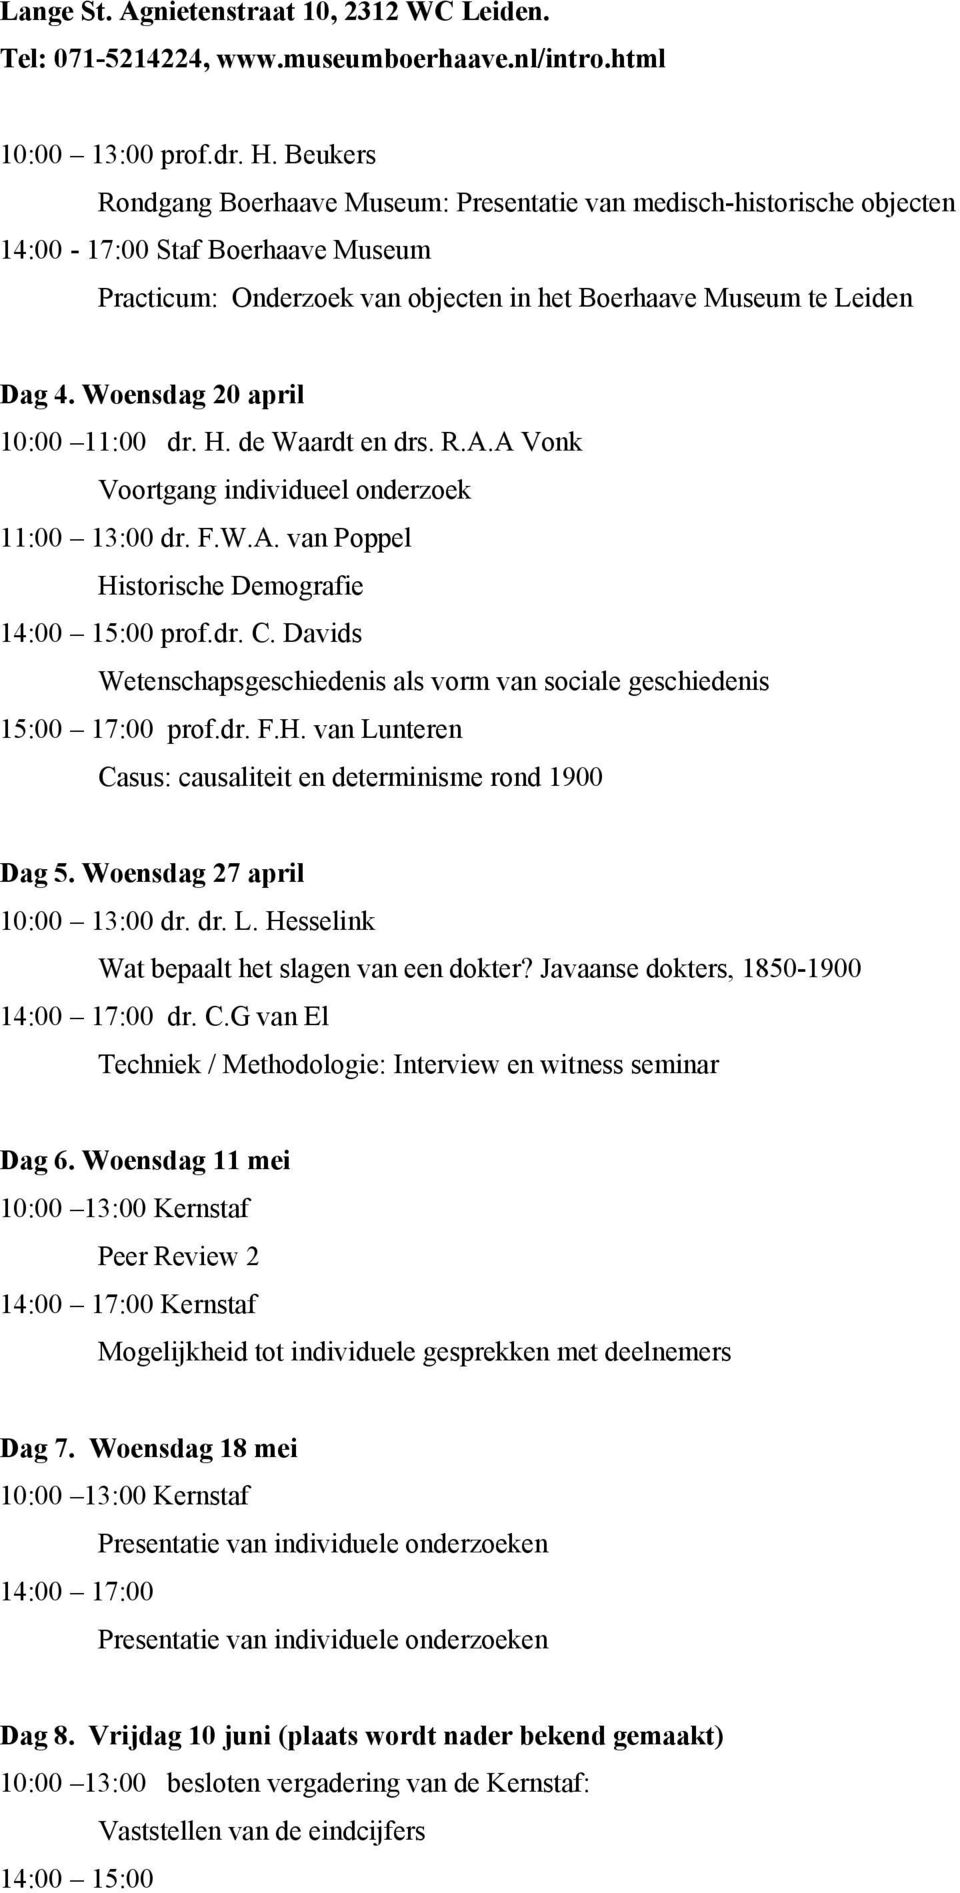 Woensdag 20 april 10:00 11:00 dr. H. de Waardt en drs. R.A.A Vonk Voortgang individueel onderzoek 11:00 13:00 dr. F.W.A. van Poppel Historische Demografie 14:00 15:00 prof.dr. C.